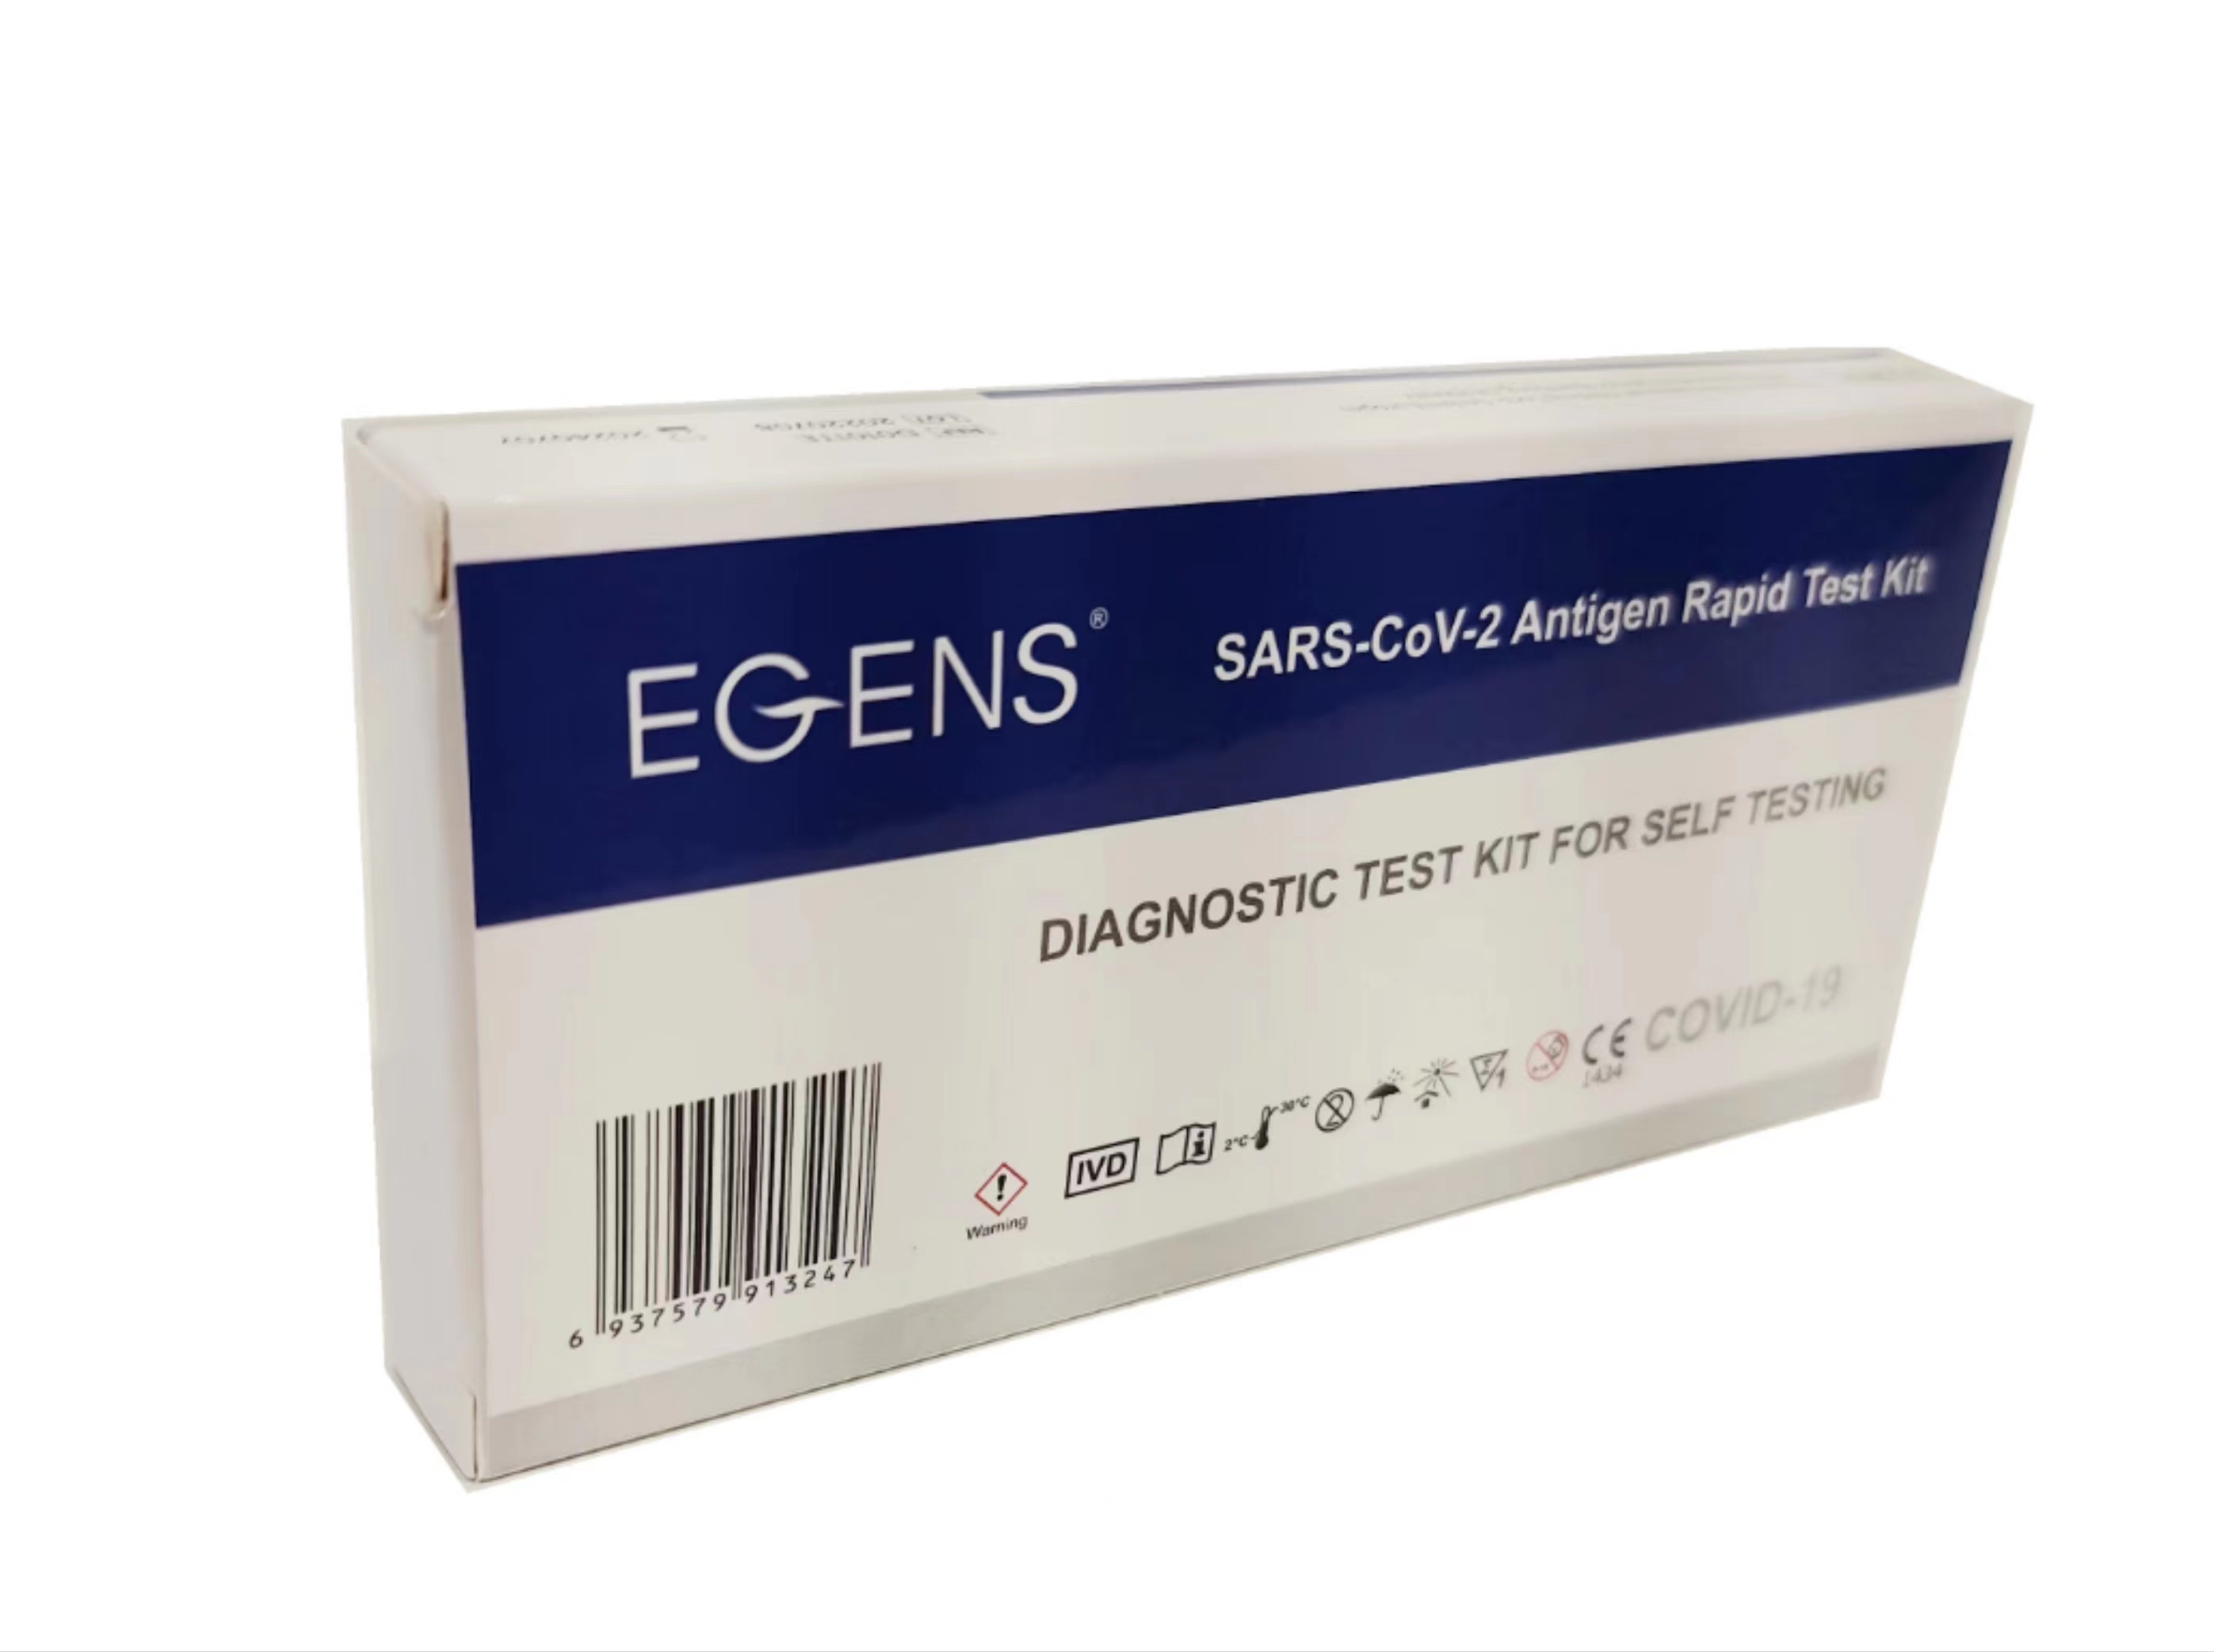      LAIEN Egens®  Antigen schnelltests NASAL mit CE1434,1 Karton 500 Tests(Einzelverpackung) mit 5 Sprache 